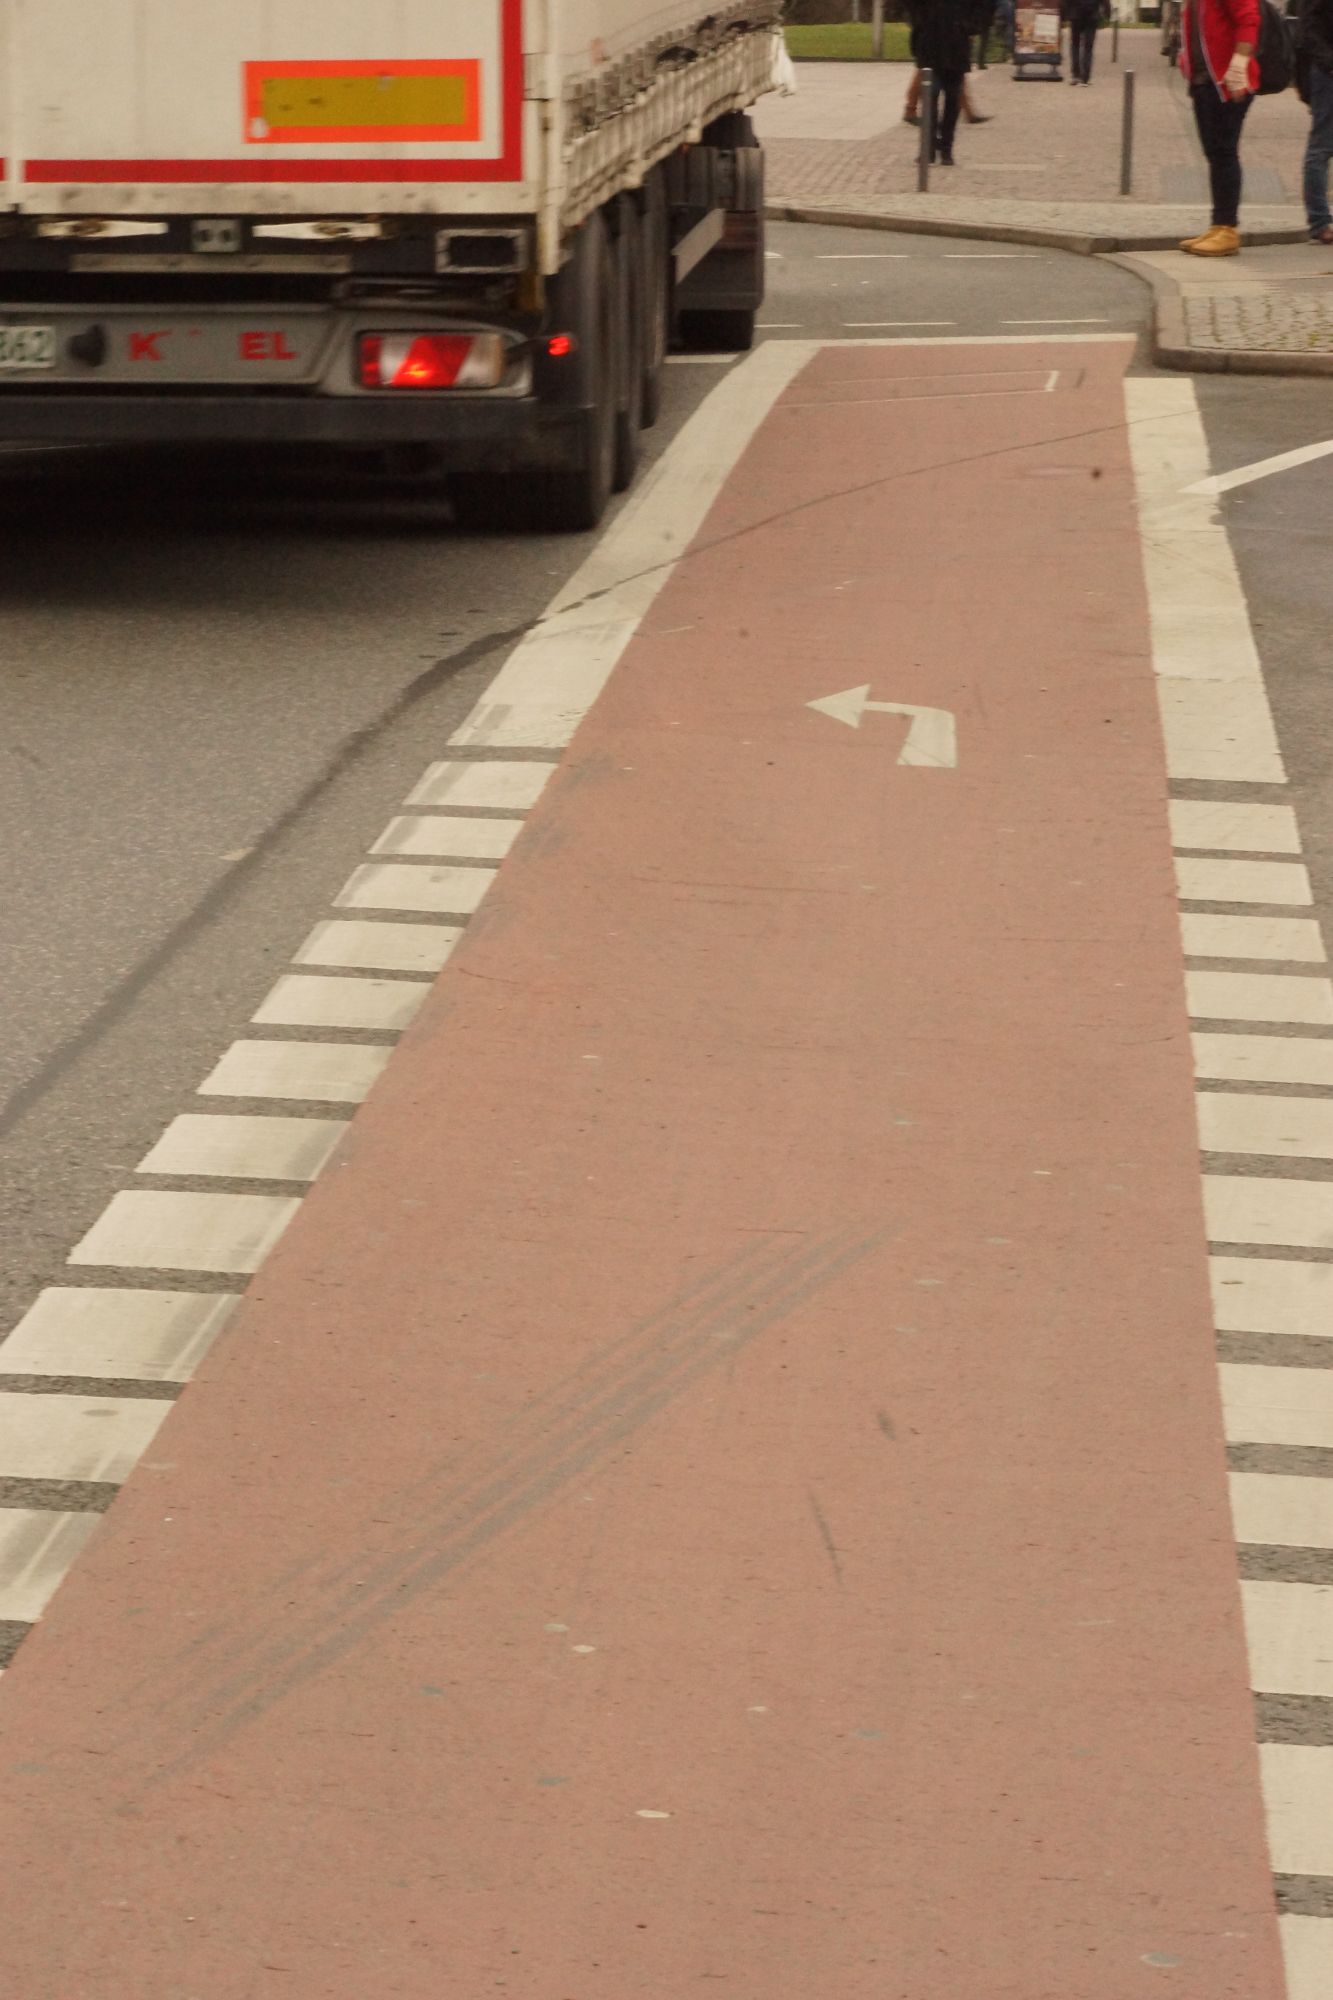 Rösrath: Polizei sensibilisiert für Fahrrad-Schutzstreifen